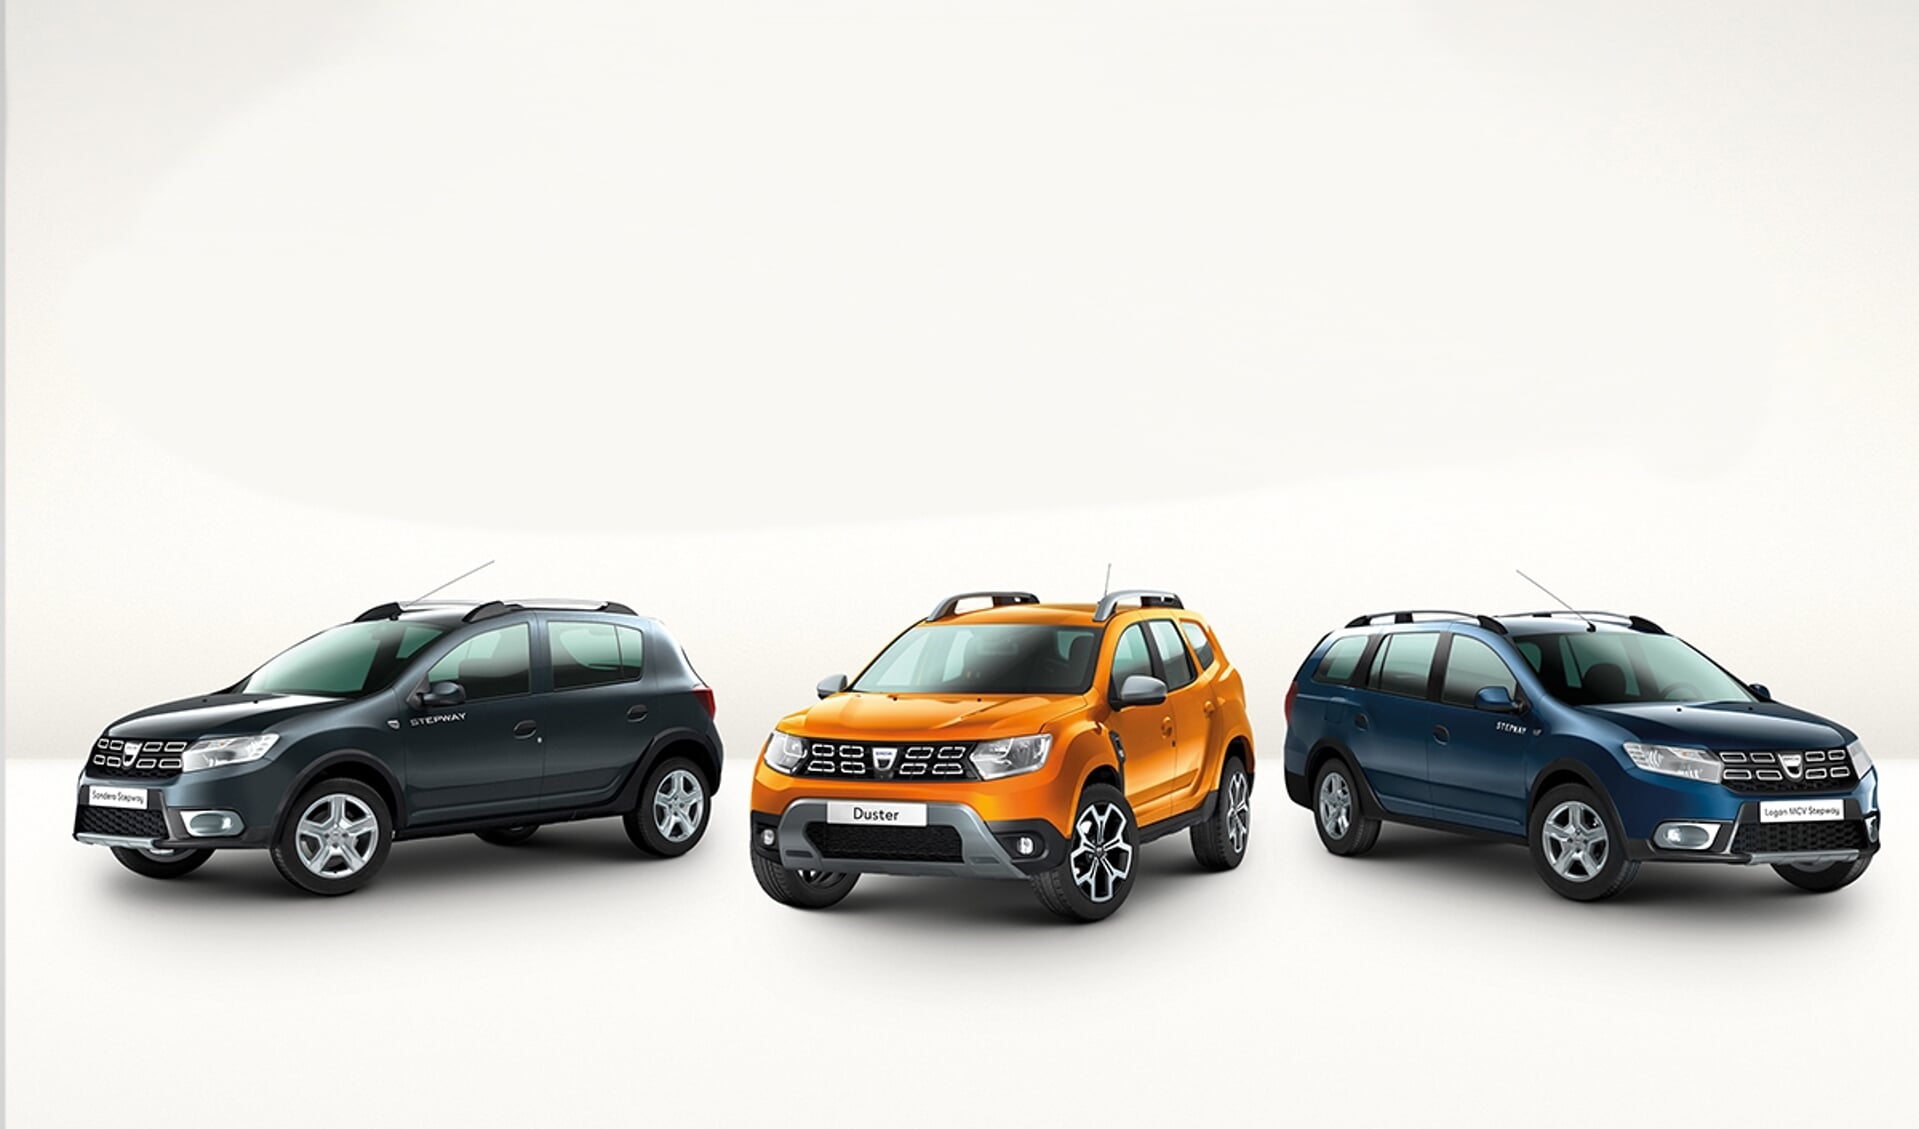 Drie Dacia's die tegen aantrekkelijke kortingen te koop zijn bij Auto Indumij.